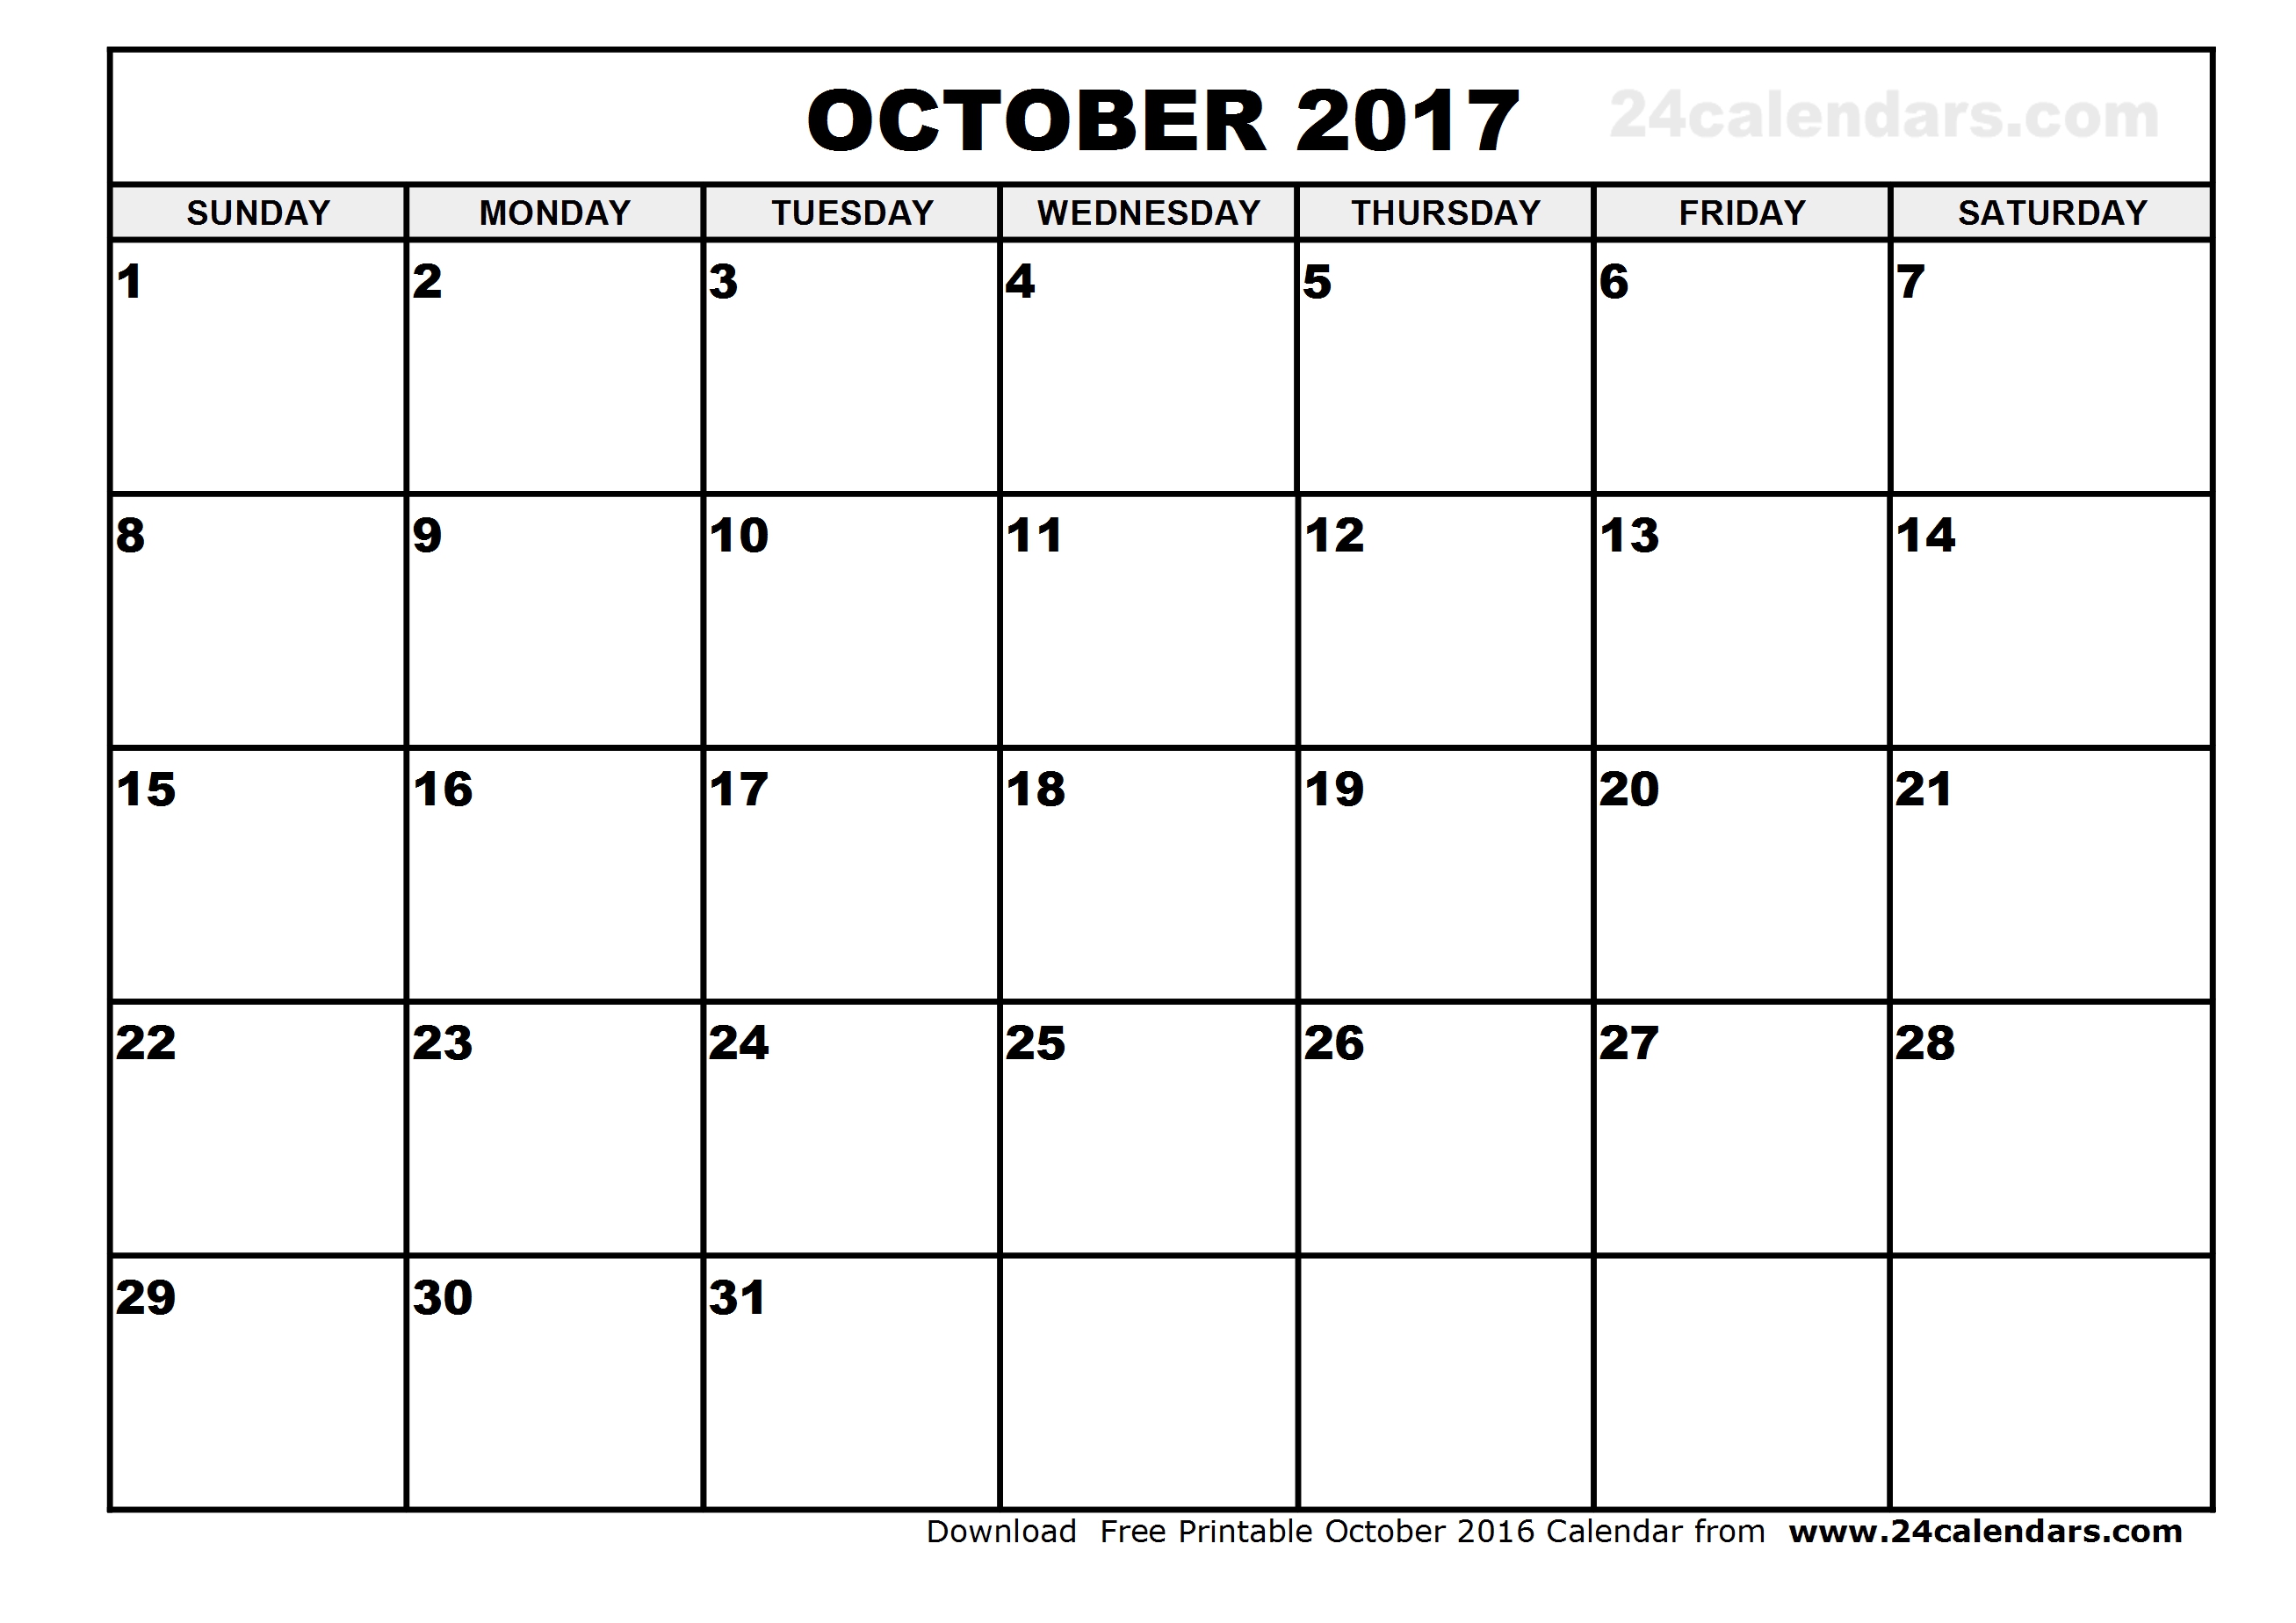 October 2017 Calendar Template | weekly calendar template